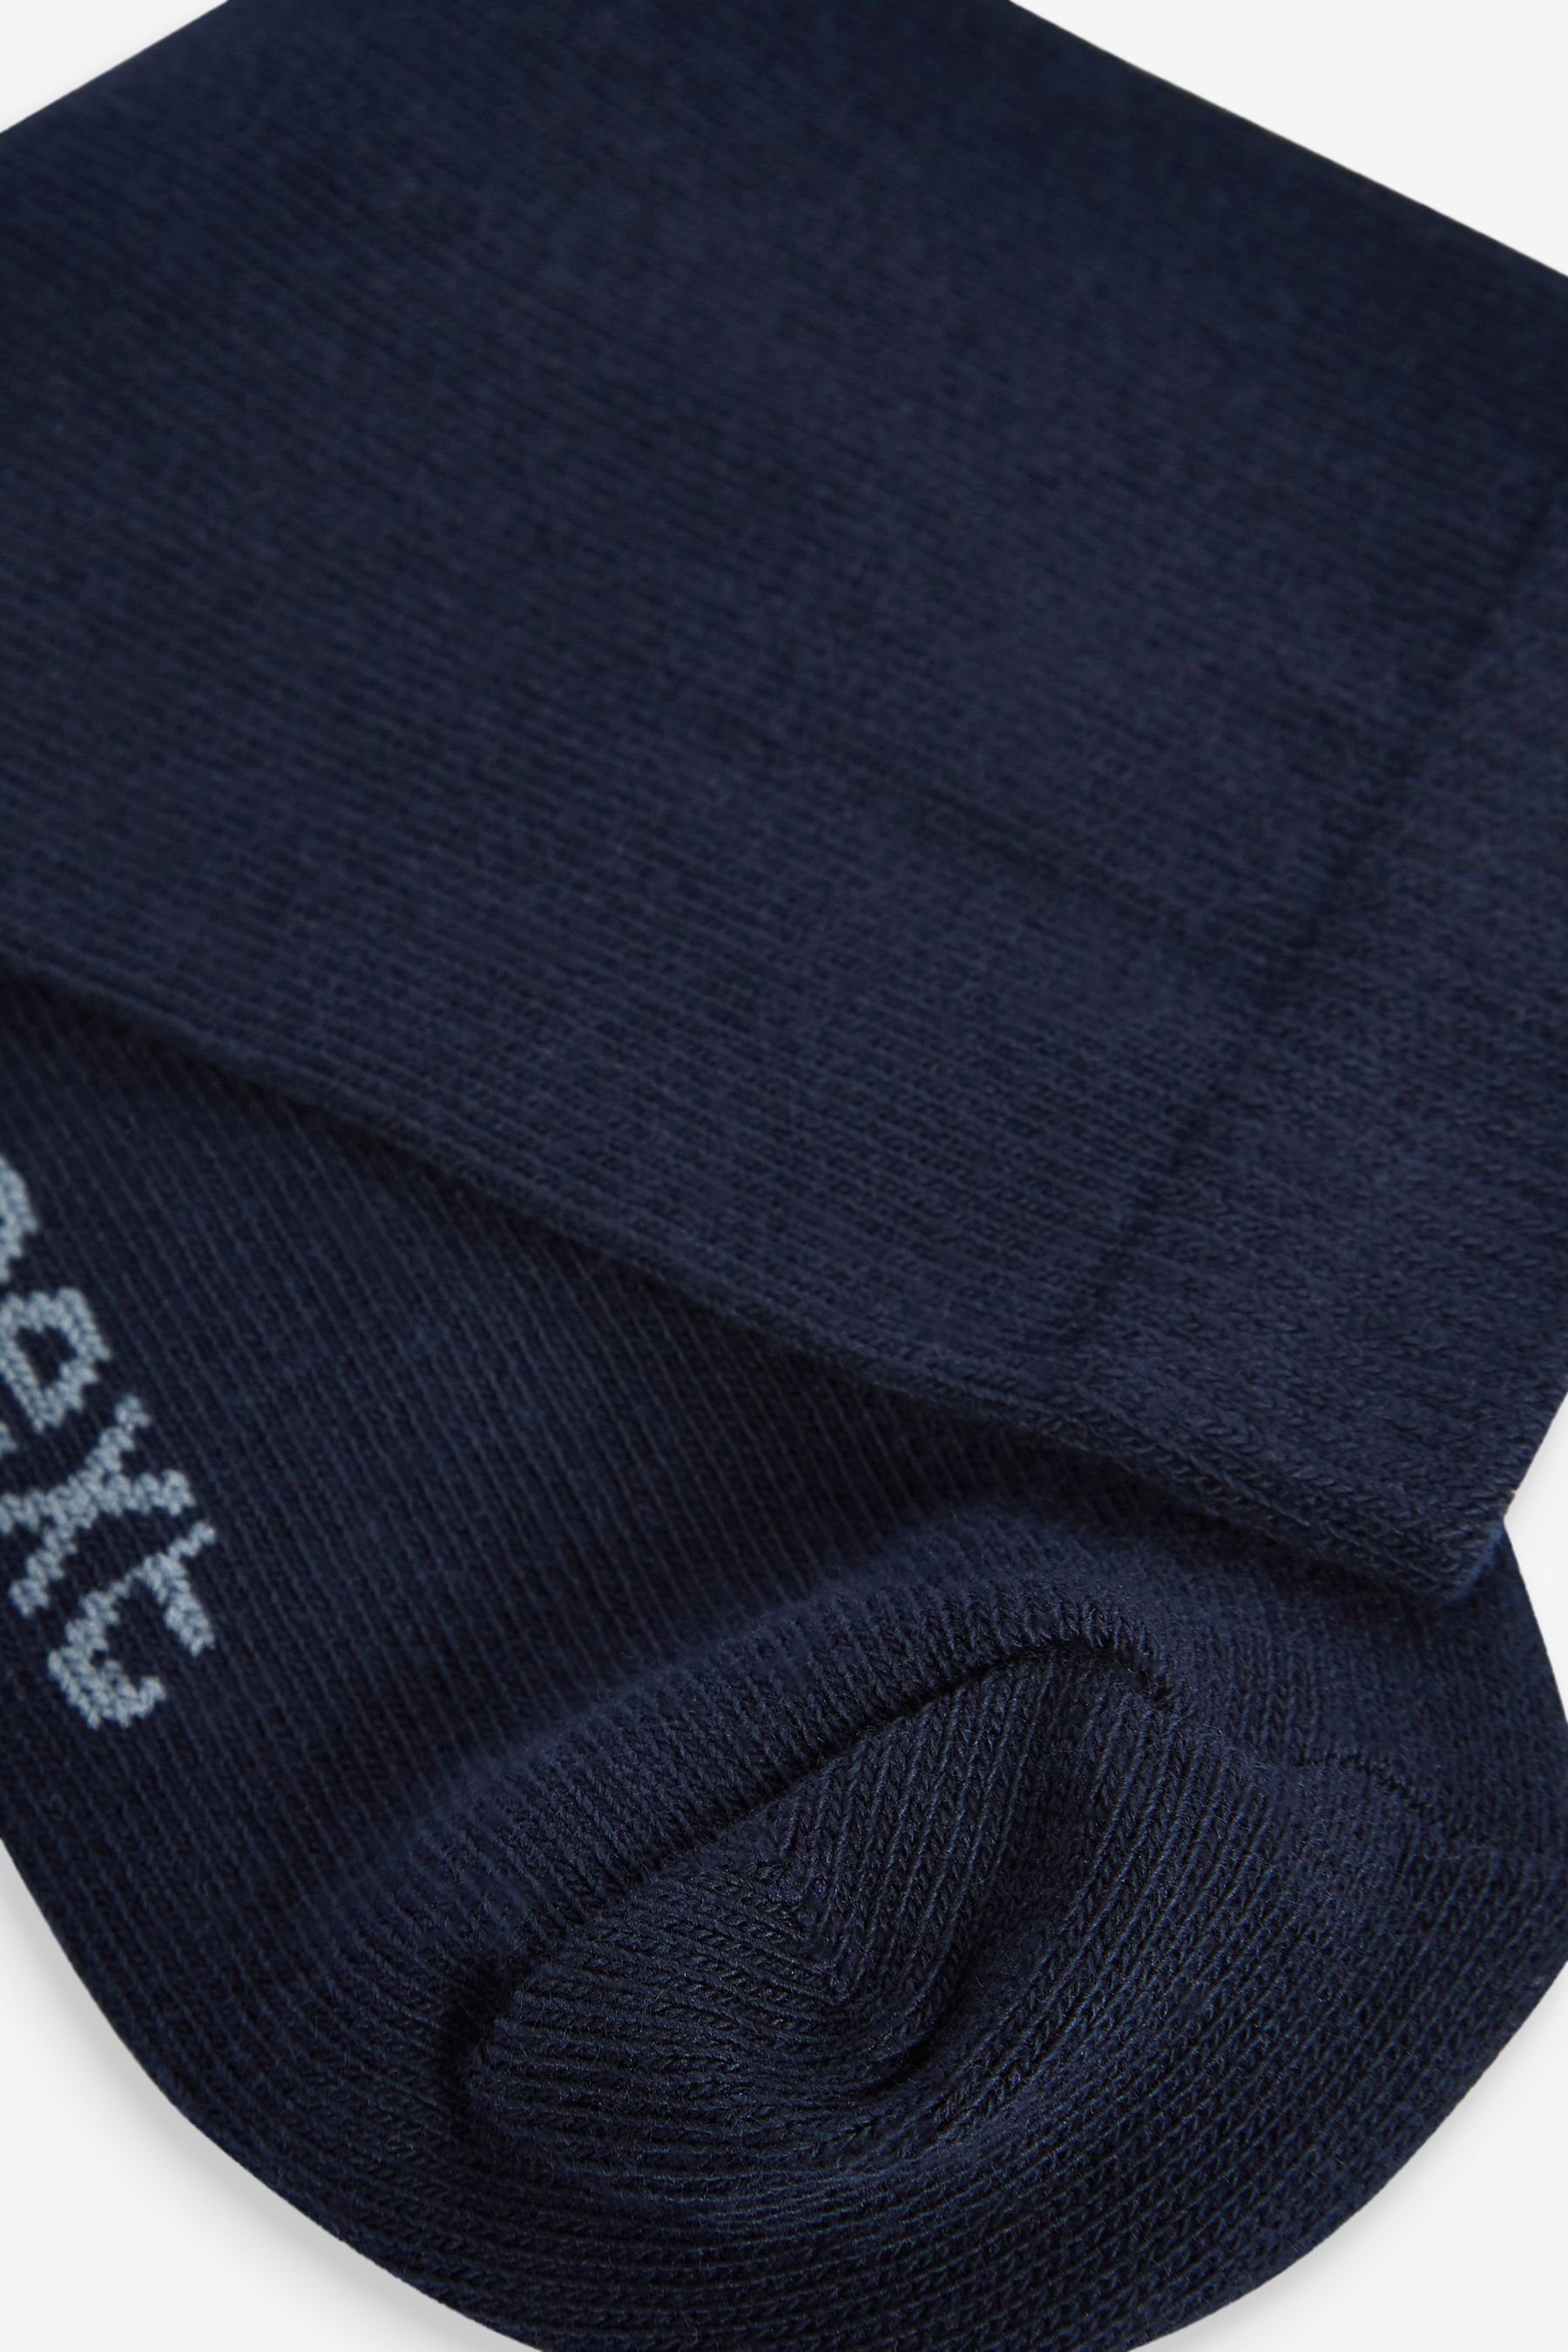 Next Kurzsocken 10er-Pack Baumwollanteil, Socken Navy hohem Blue (1-Paar) mit